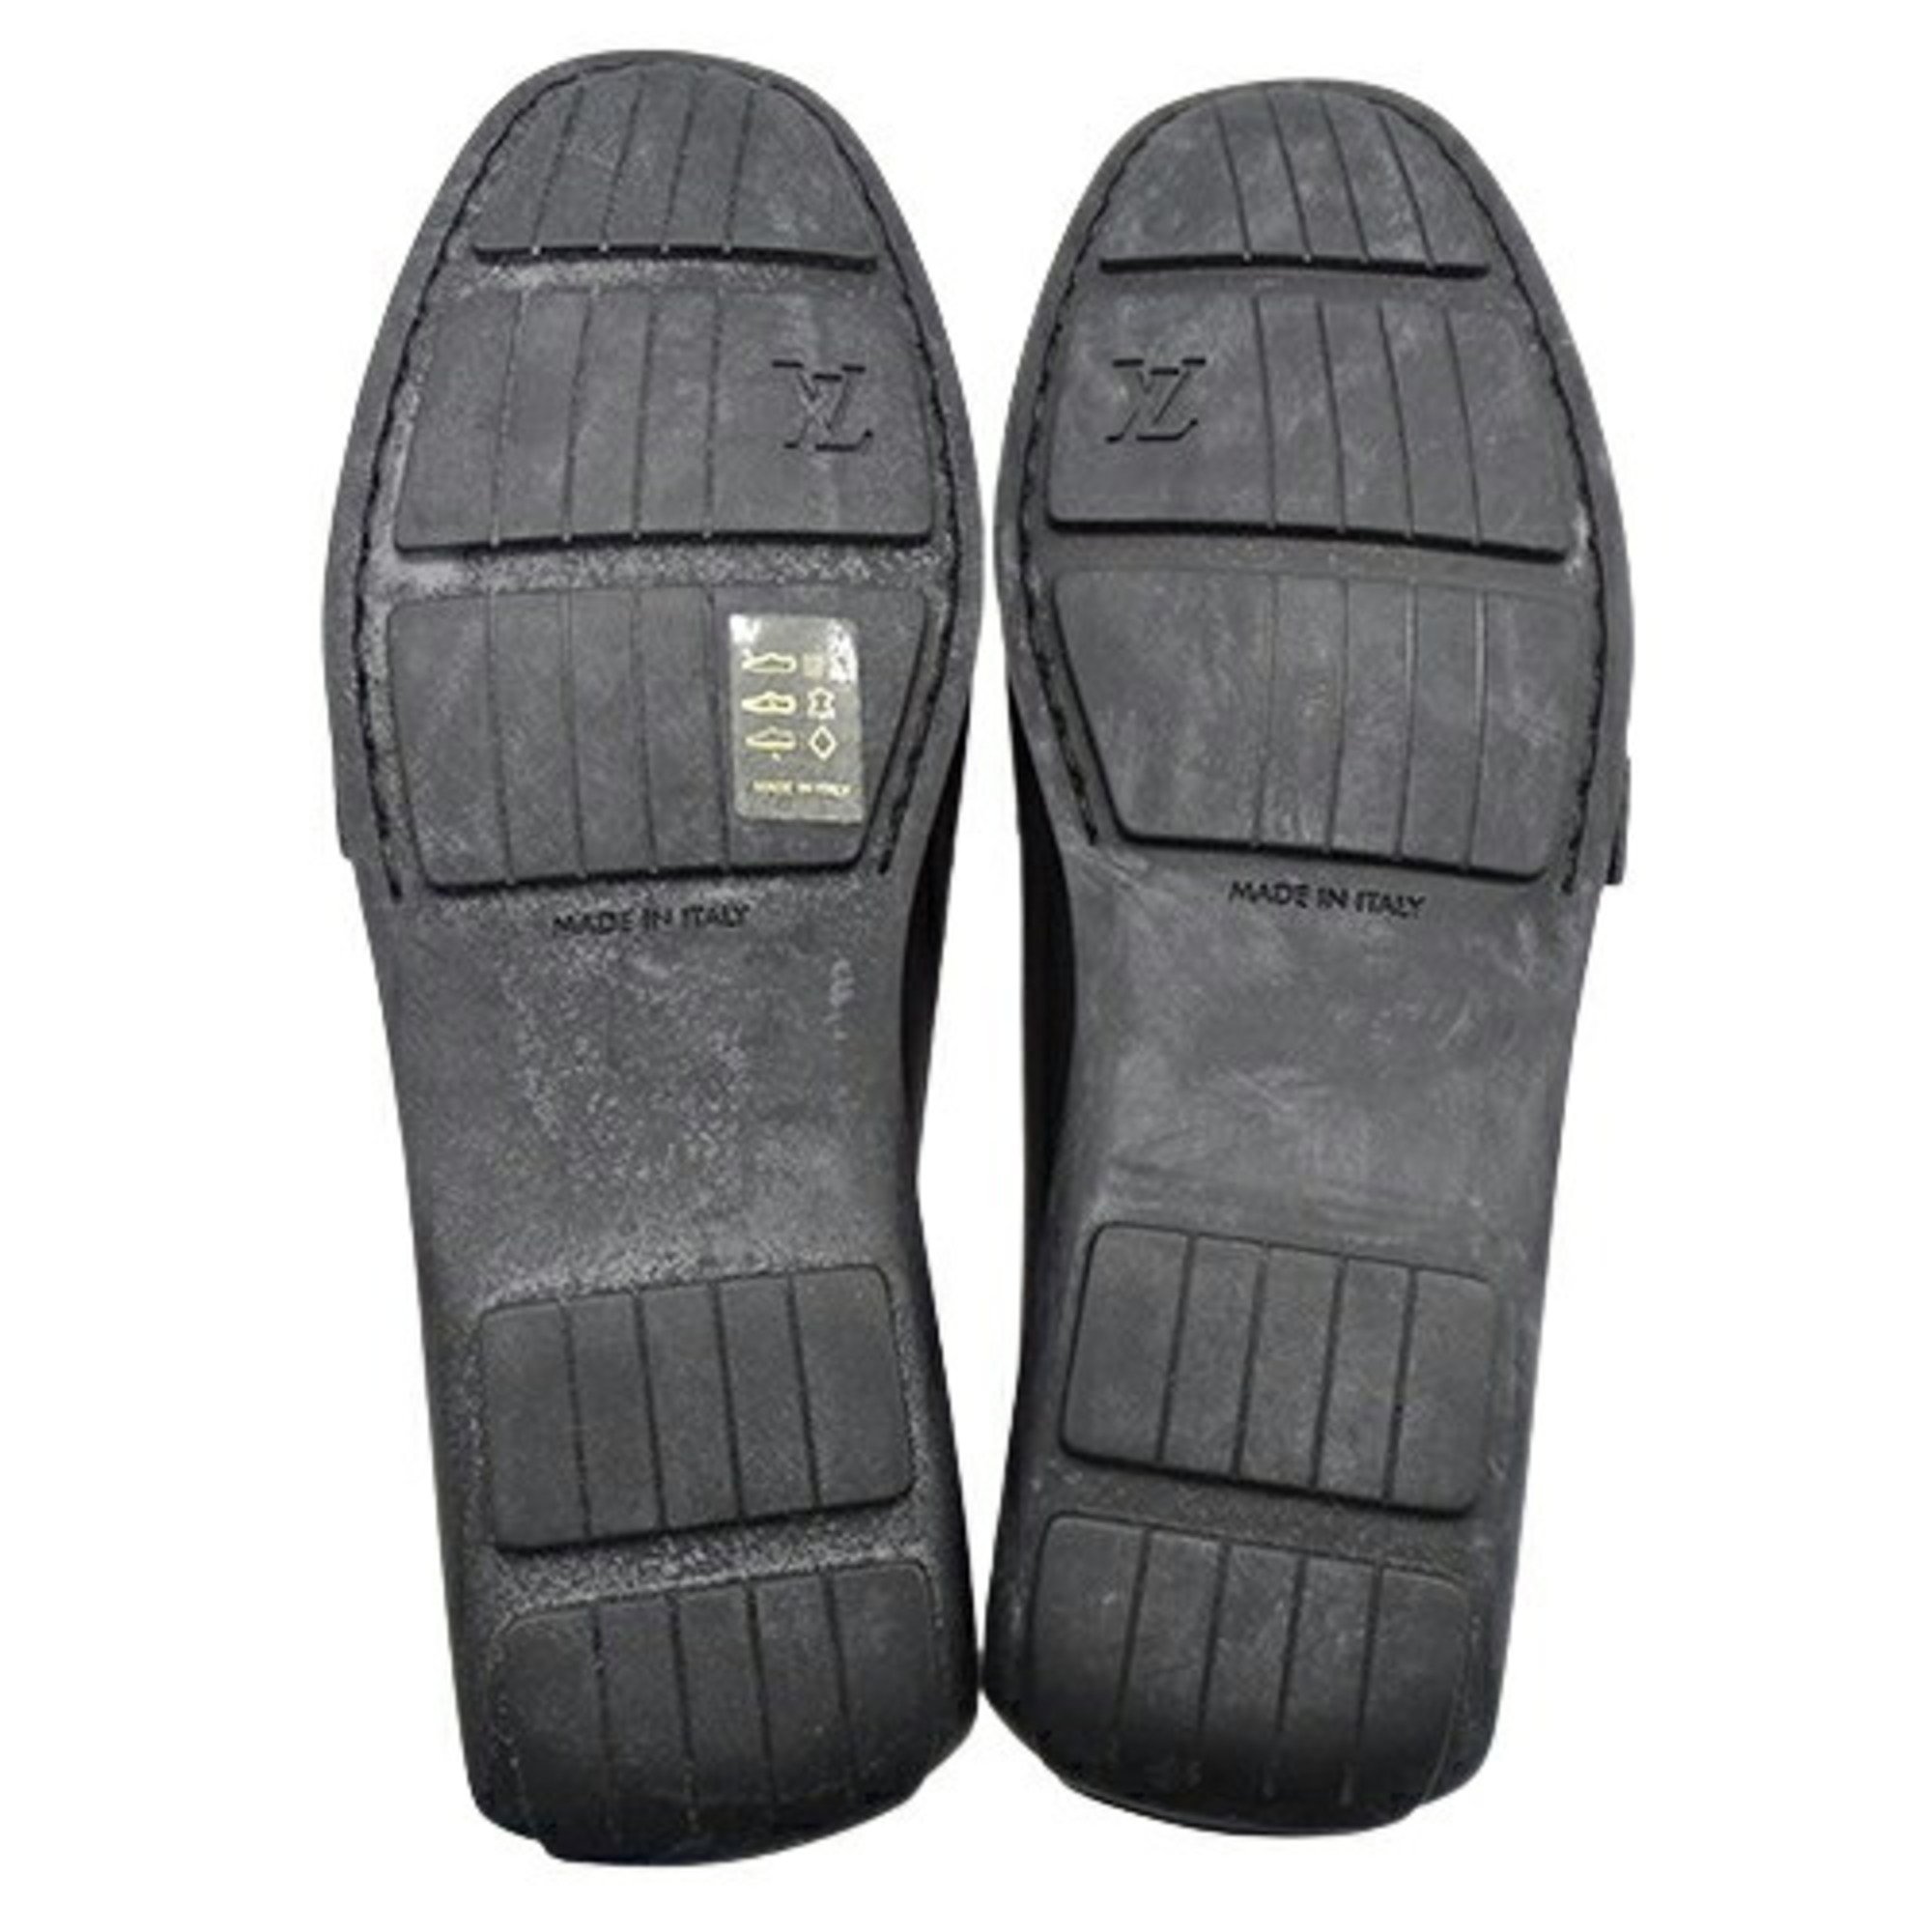 LOUIS VUITTON Shoes Women's Brand Driving Monogram Mini Leather Canvas Black 34 1/2 Approx. 21.5cm